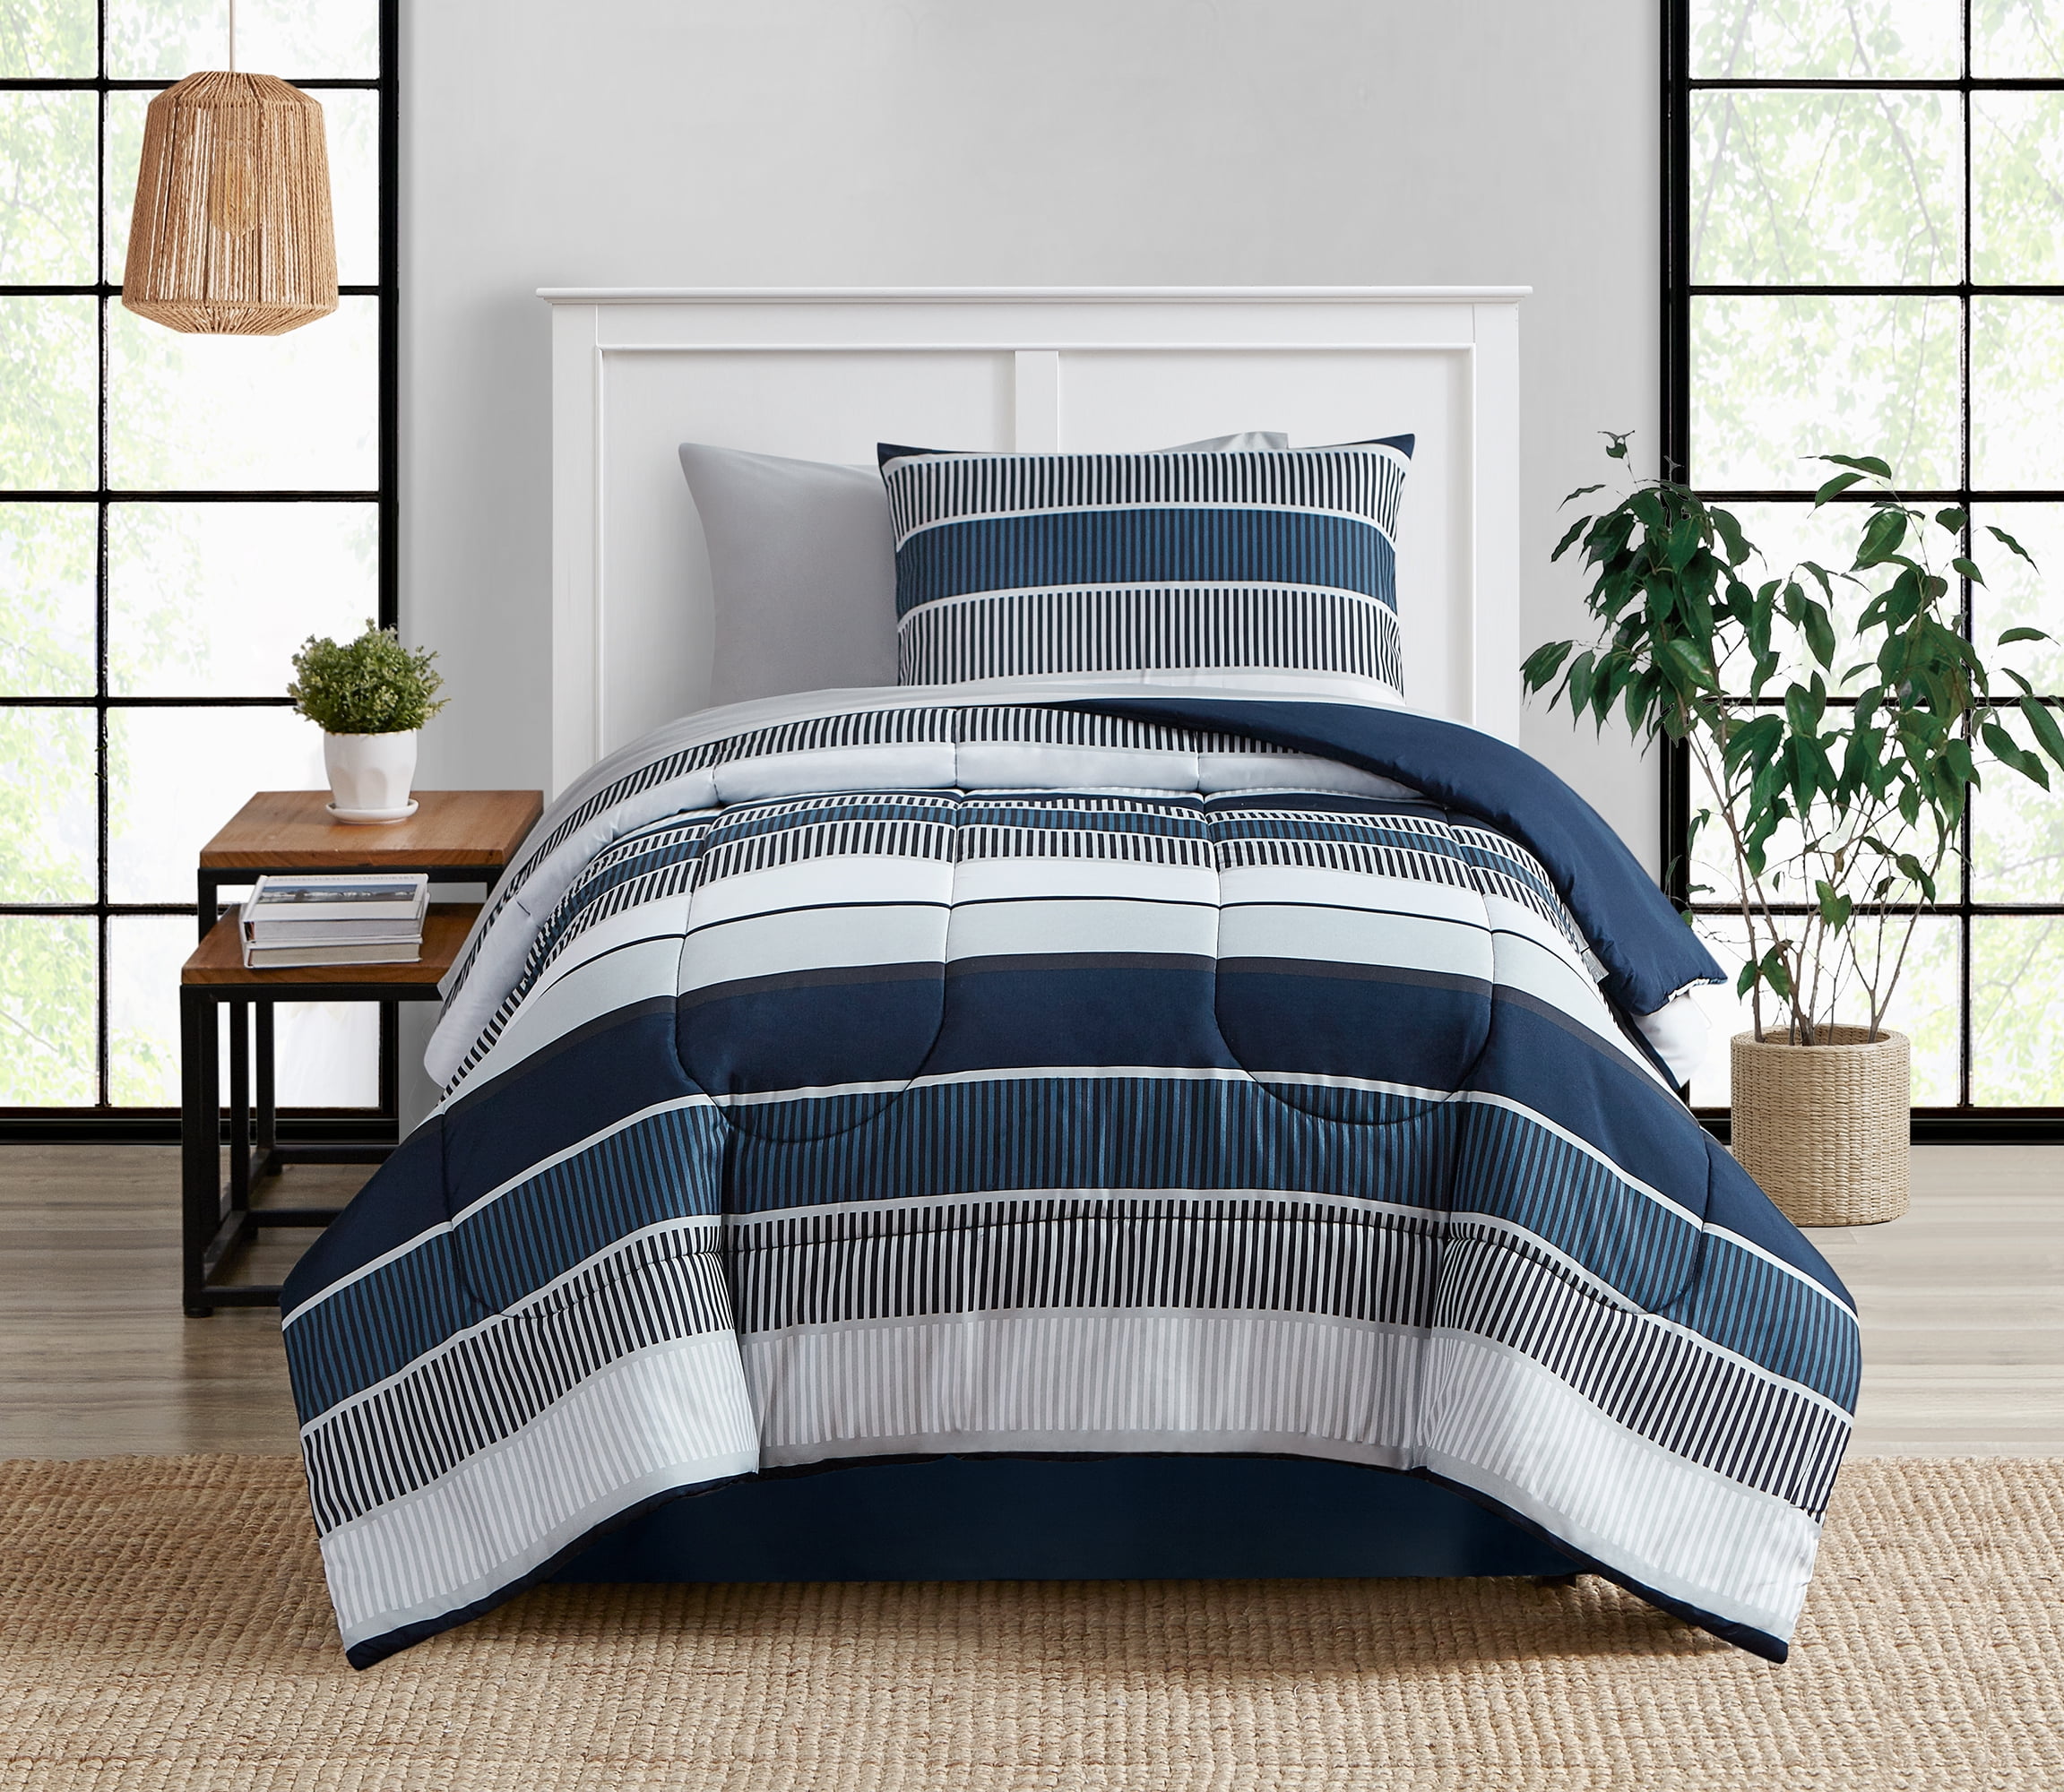 New Teens Dorm Blue Stripes Comforter 4 pcs Queen Twin TXL Bedding Set 